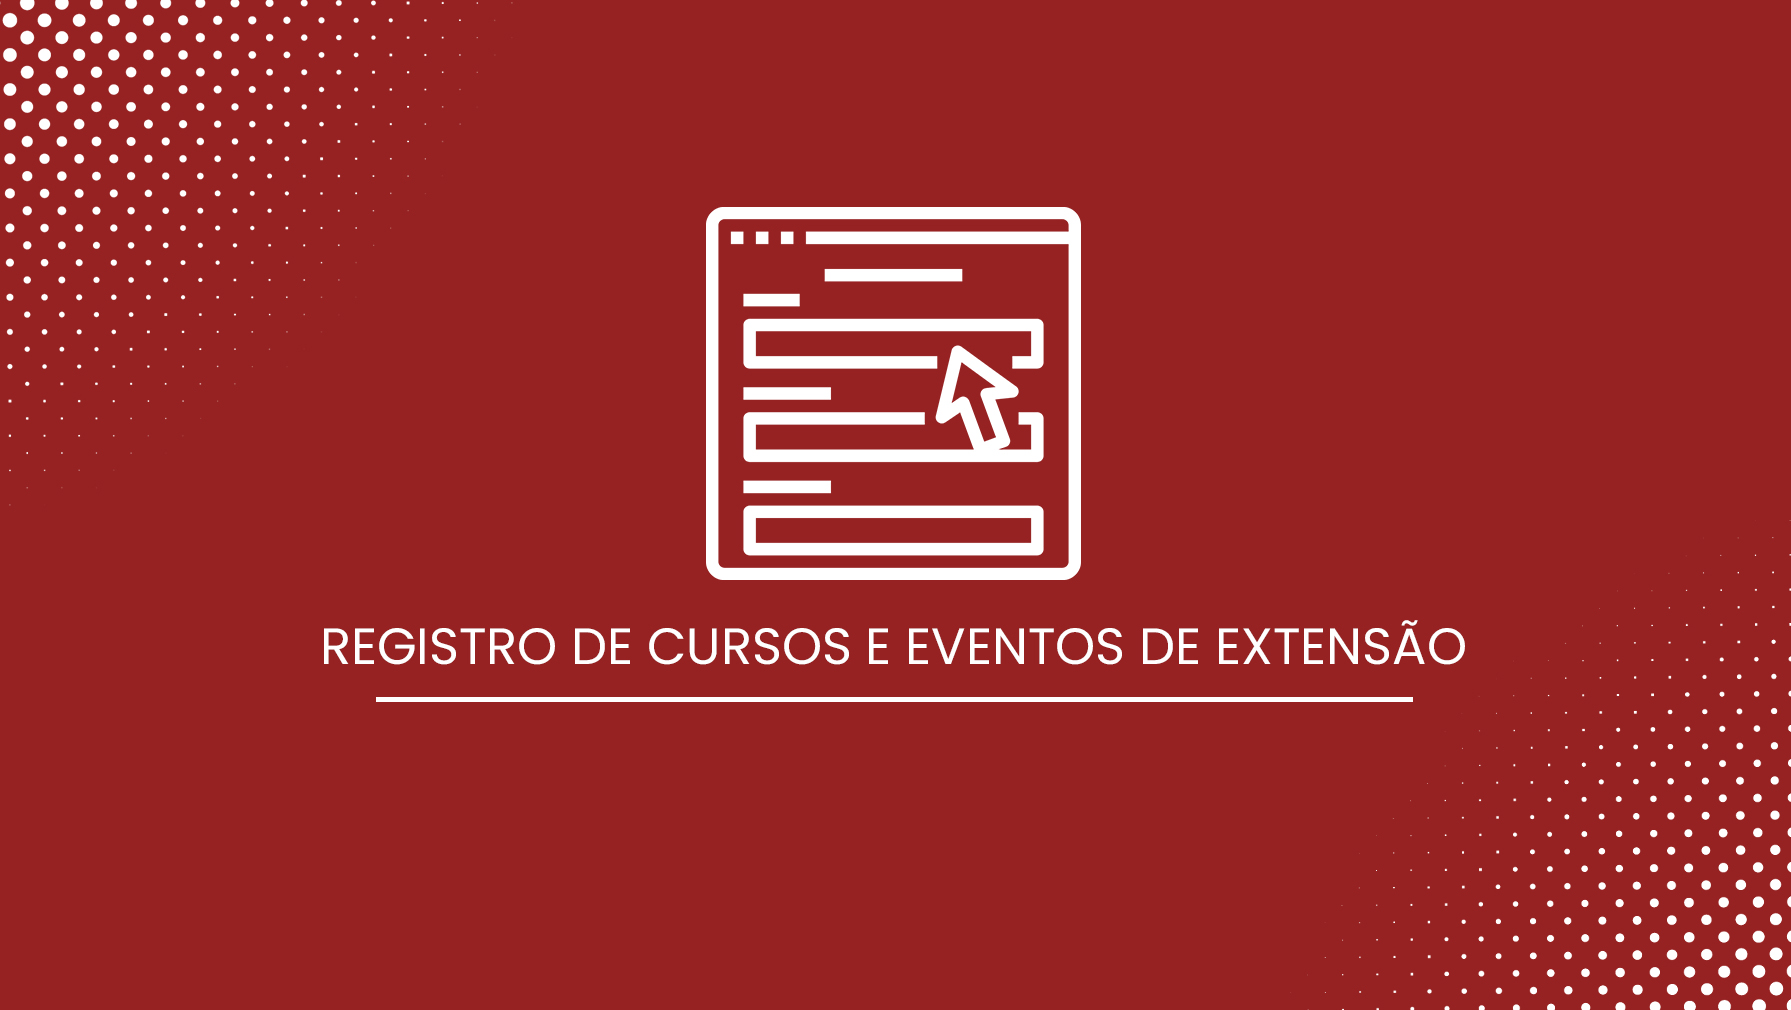 REGISTRO DE CURSOS E EVENTOS DE EXTENSÃO